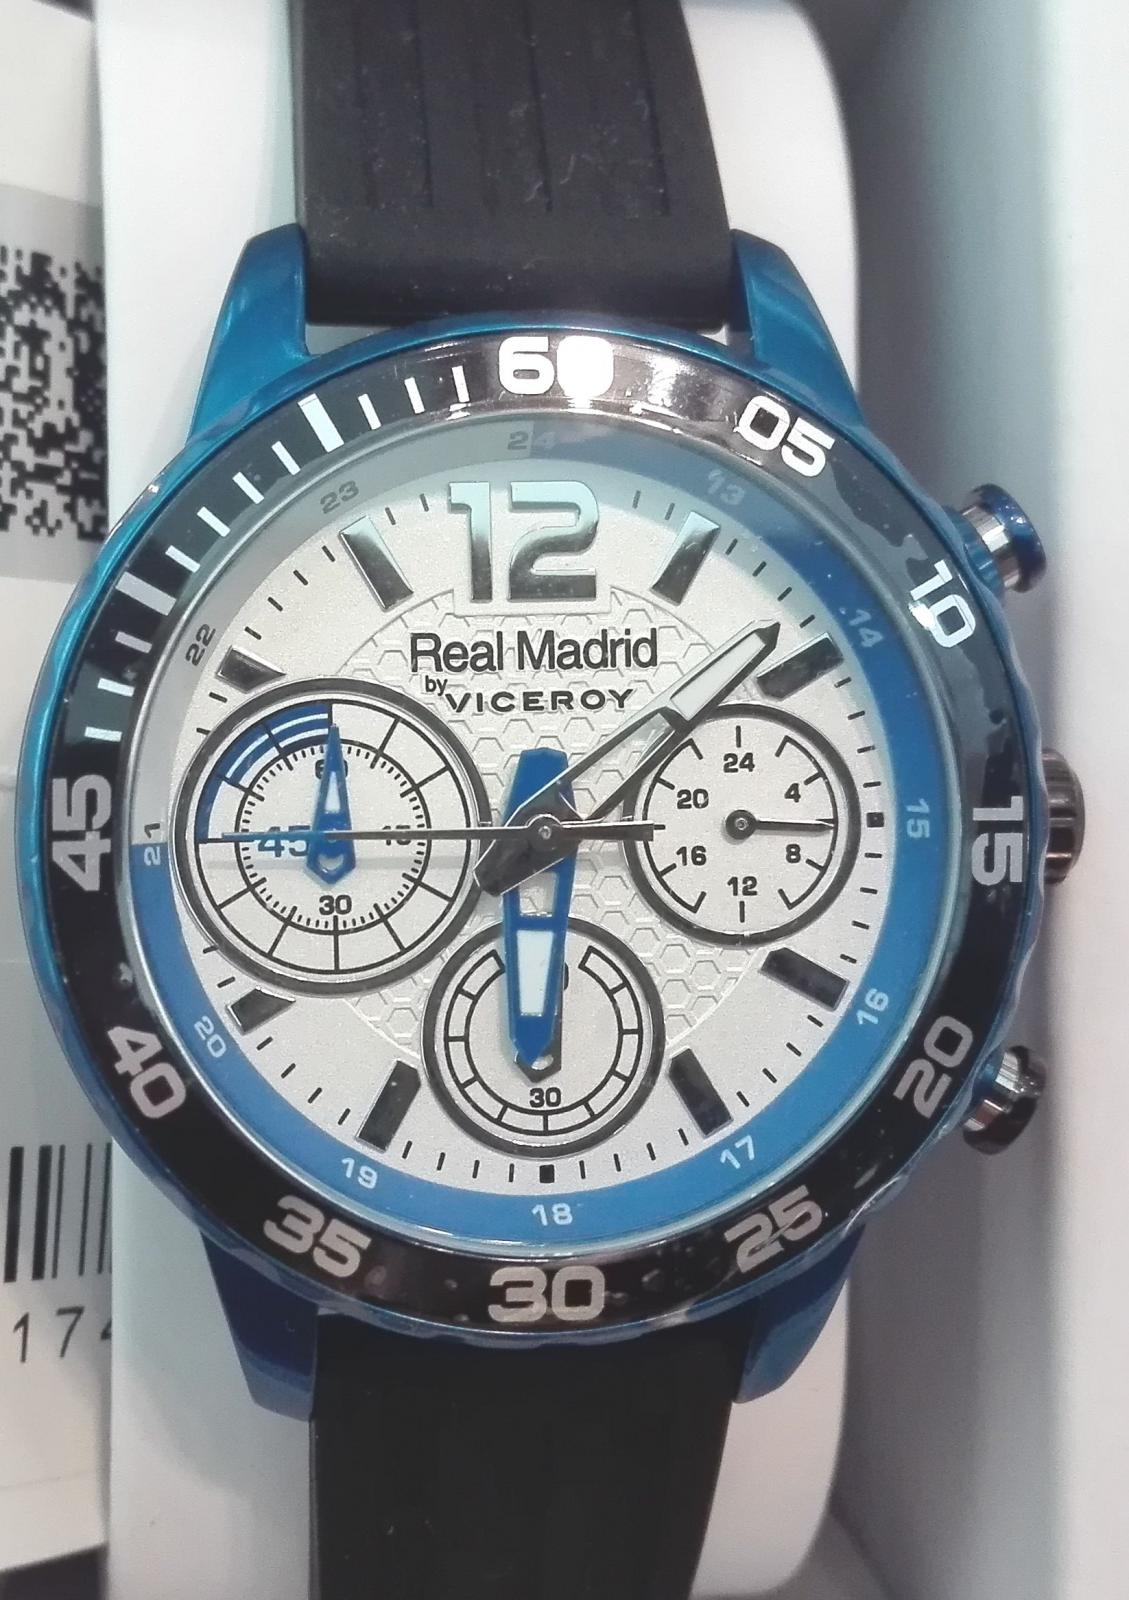 Reloj Viceroy Real Madrid 40967-05 Multifunción ¡Vamos!